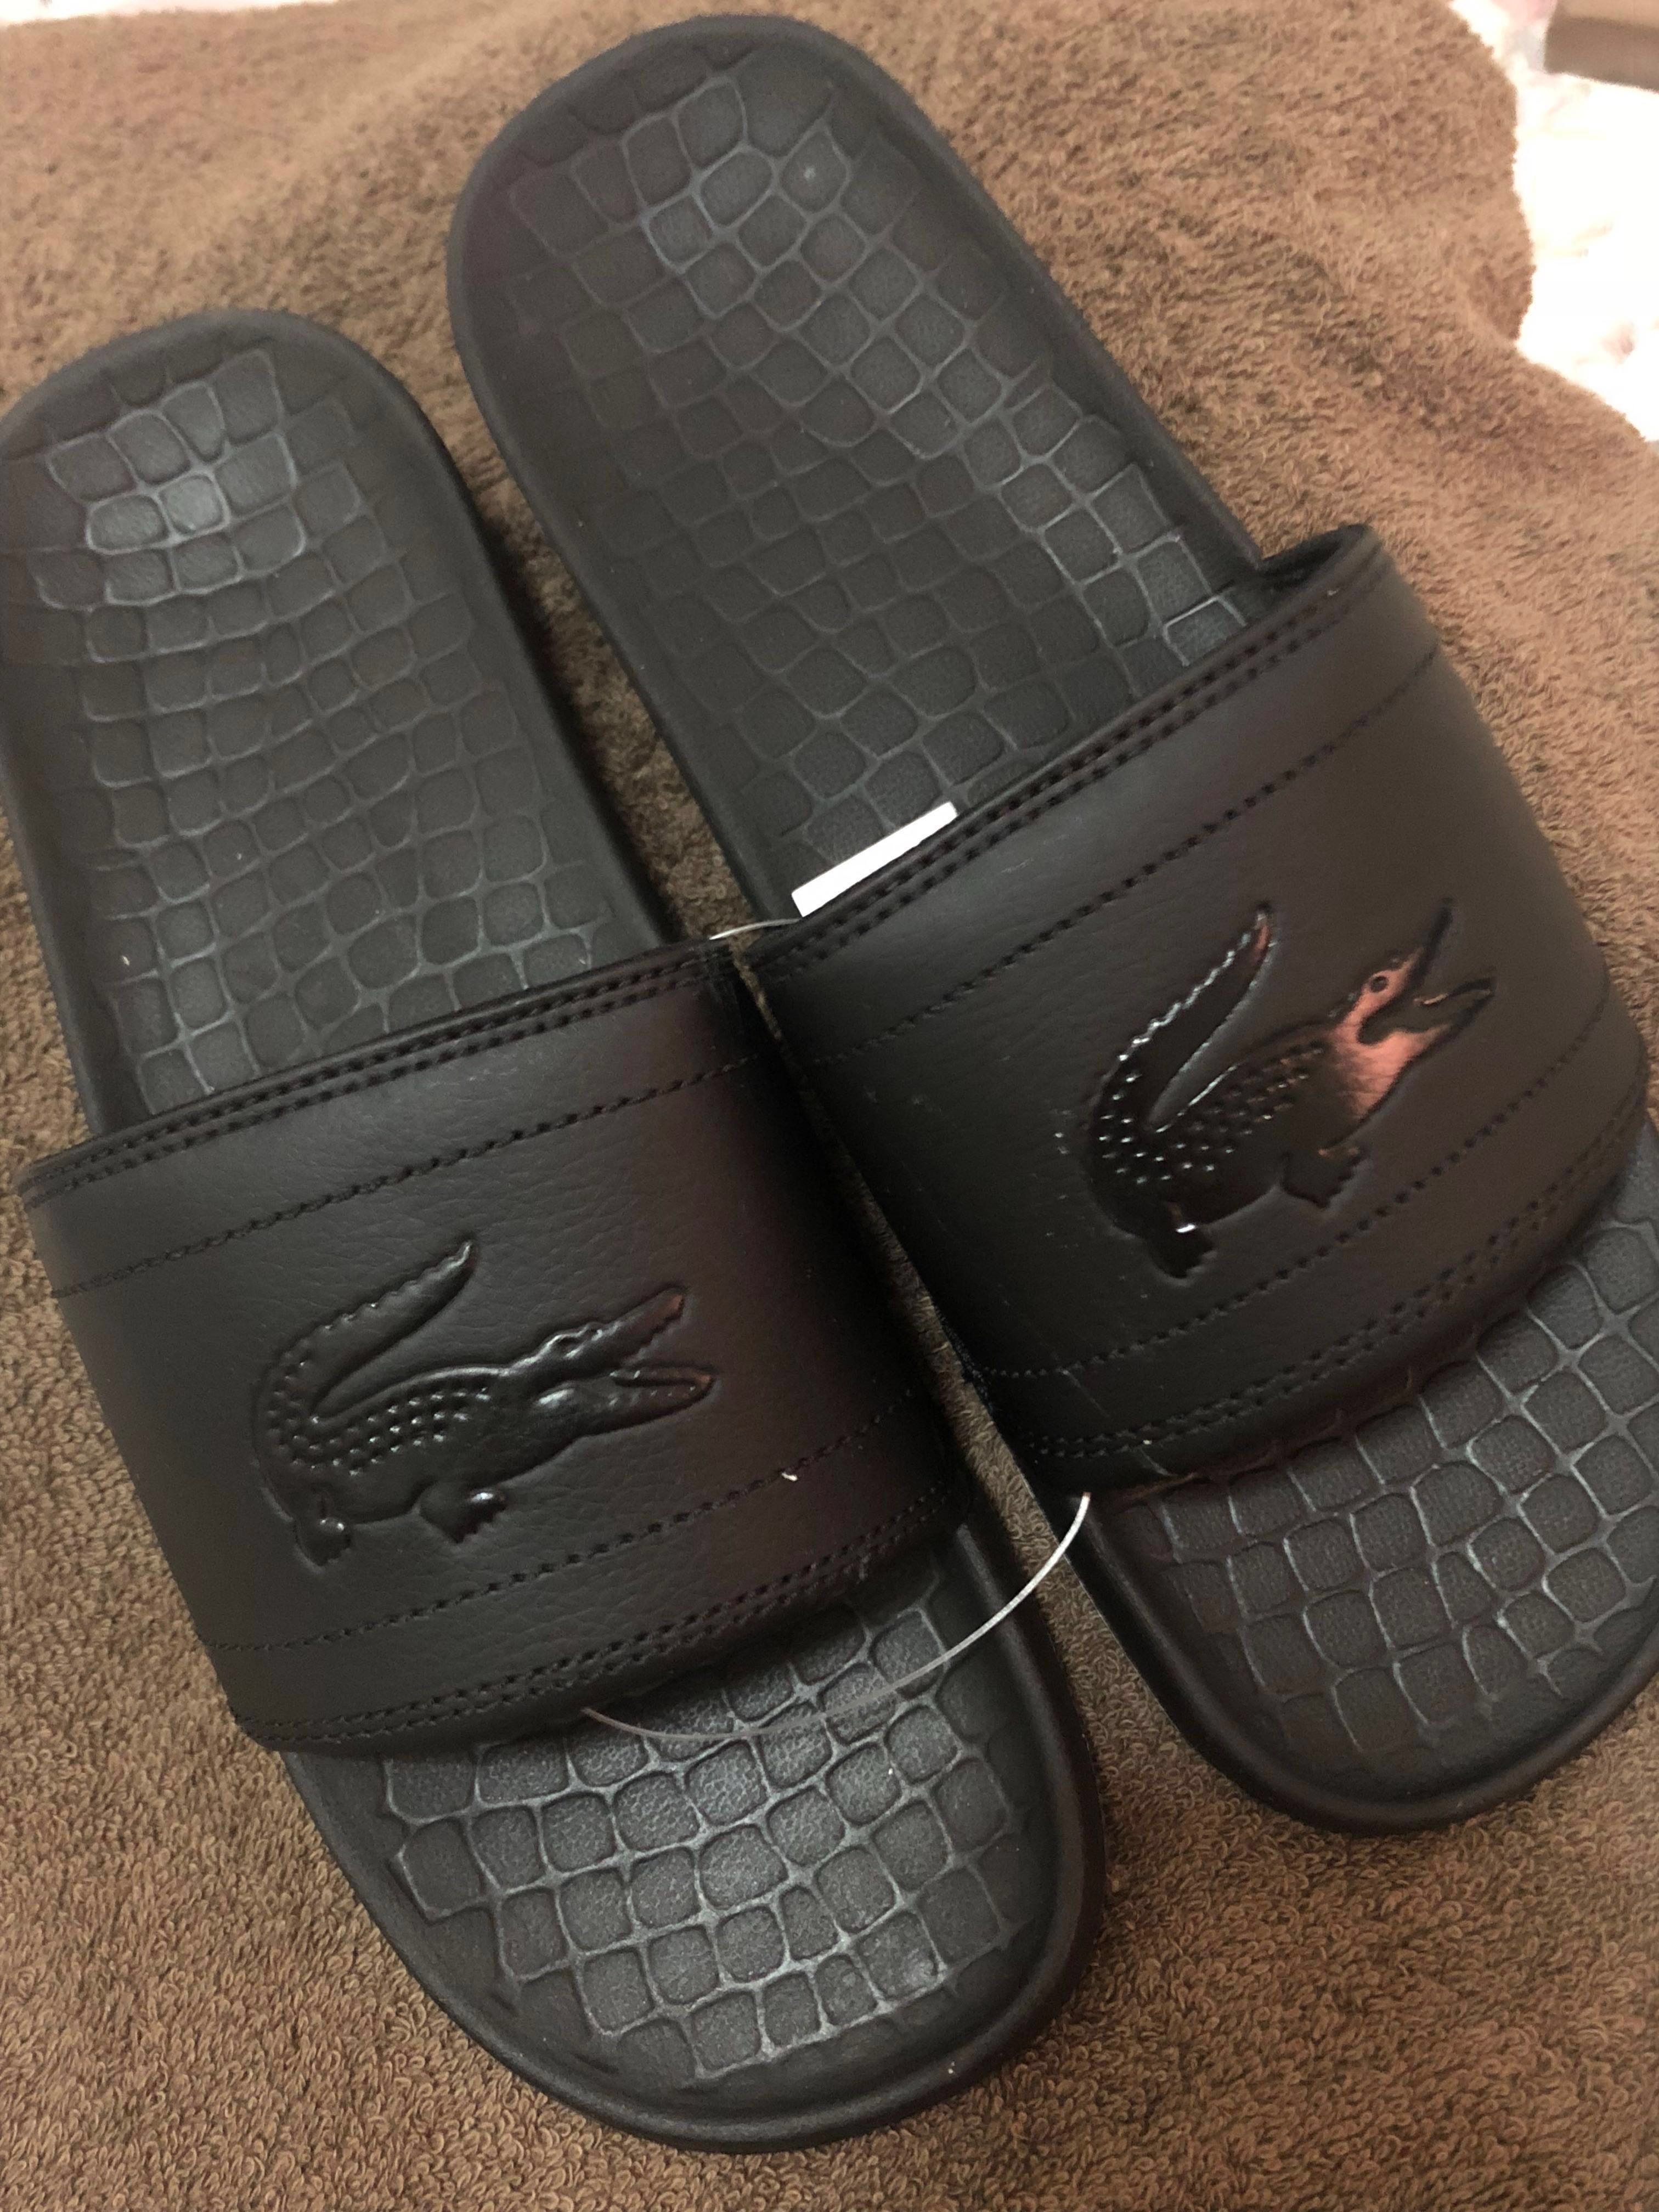 lacoste slippers for men